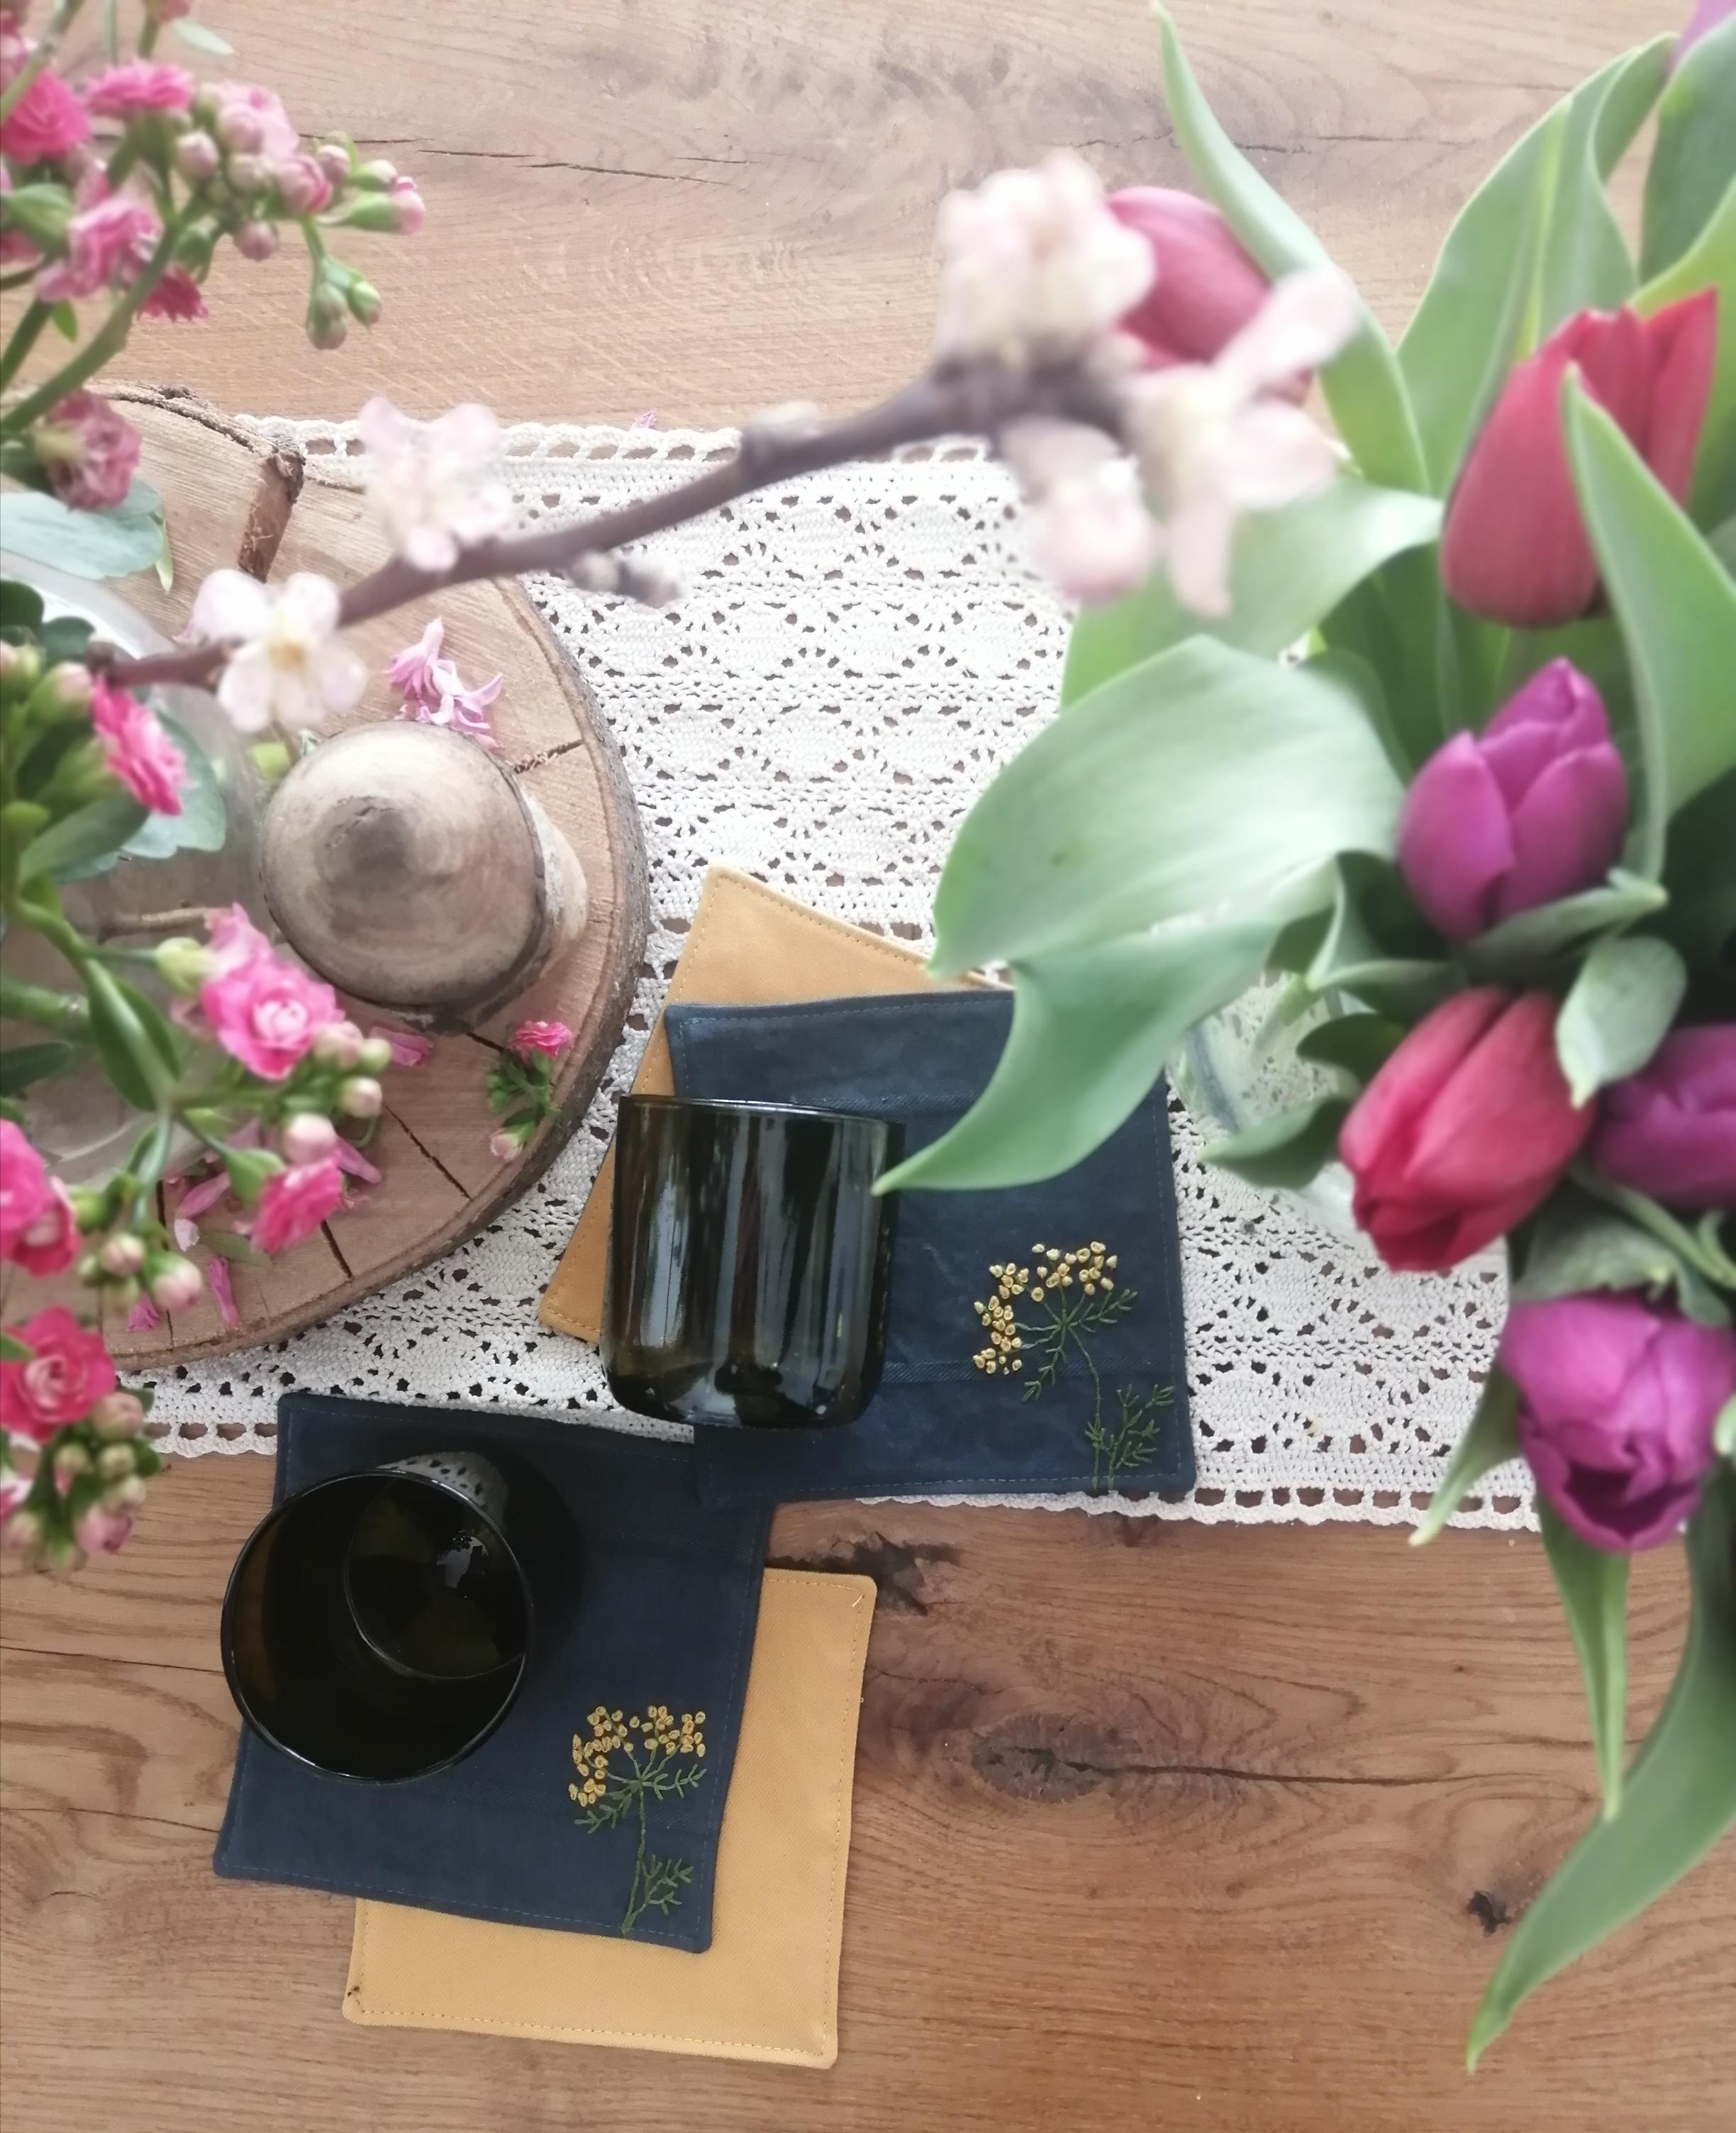 Frühling auf dem Tisch 🌷🌿
#freshflowers #embroiderylove #tassenuntersetzer #dekoidee #blumen